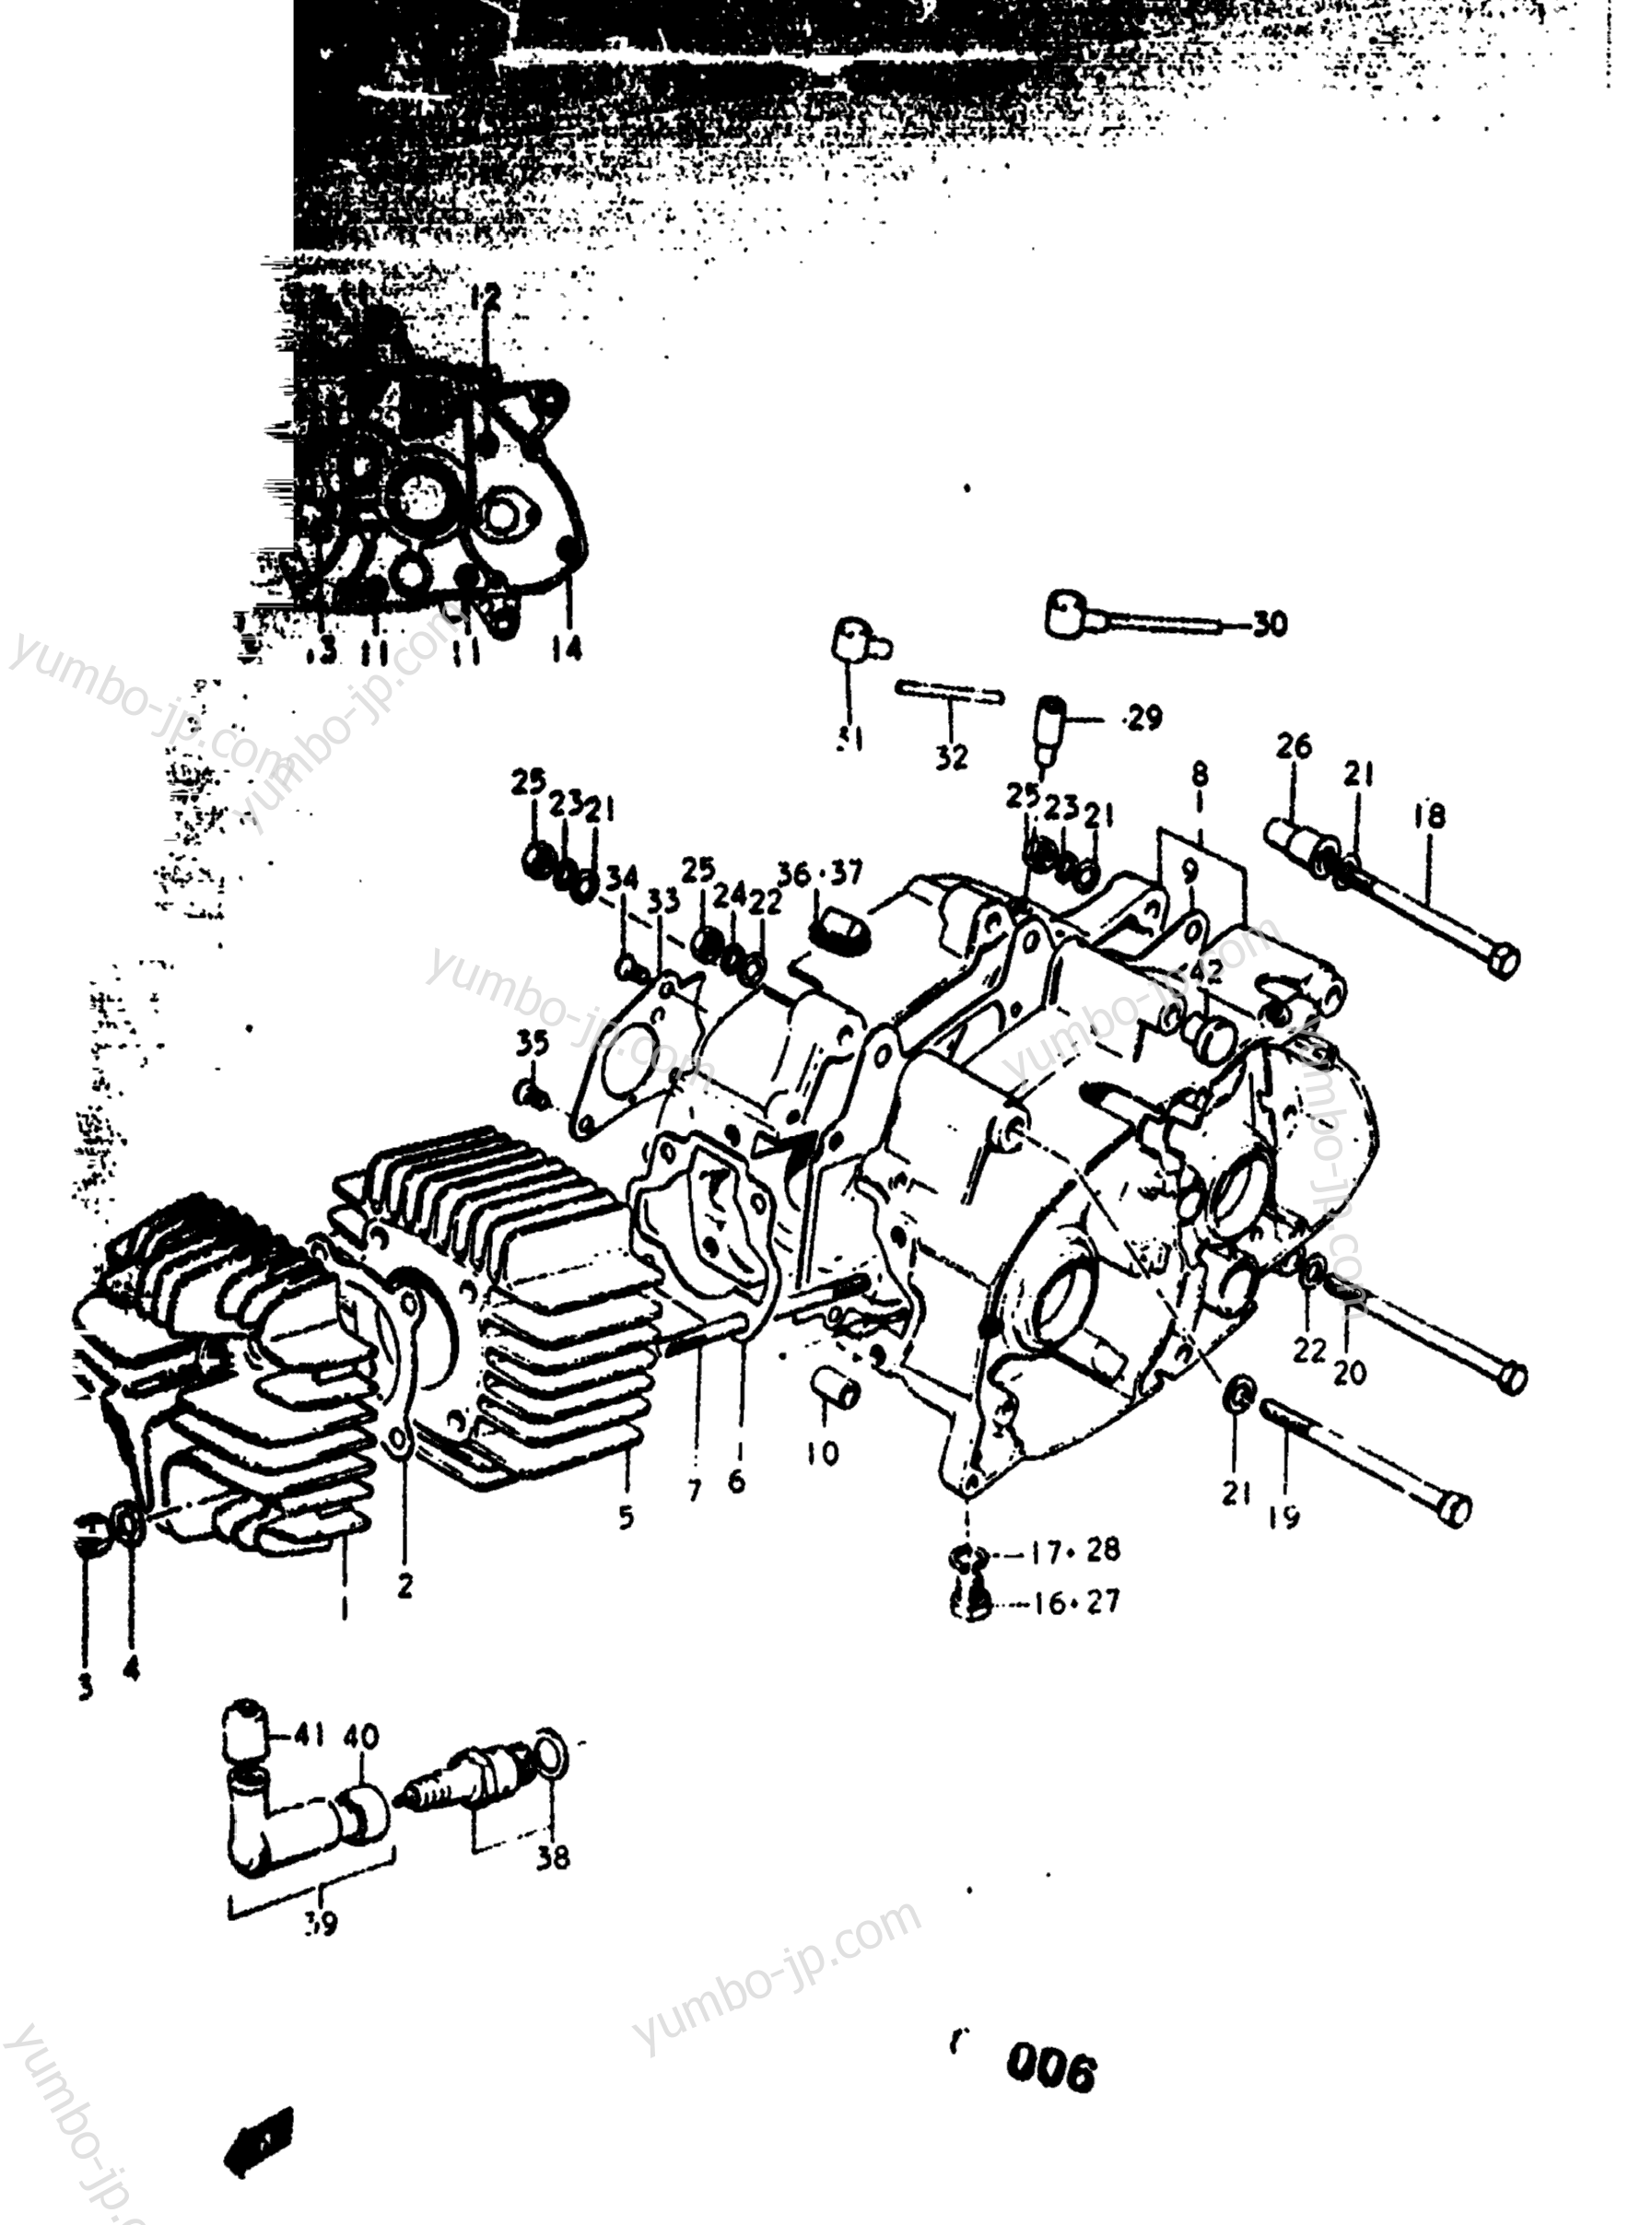 Cylinder - Crankcase for motorcycles SUZUKI RV90 1976 year